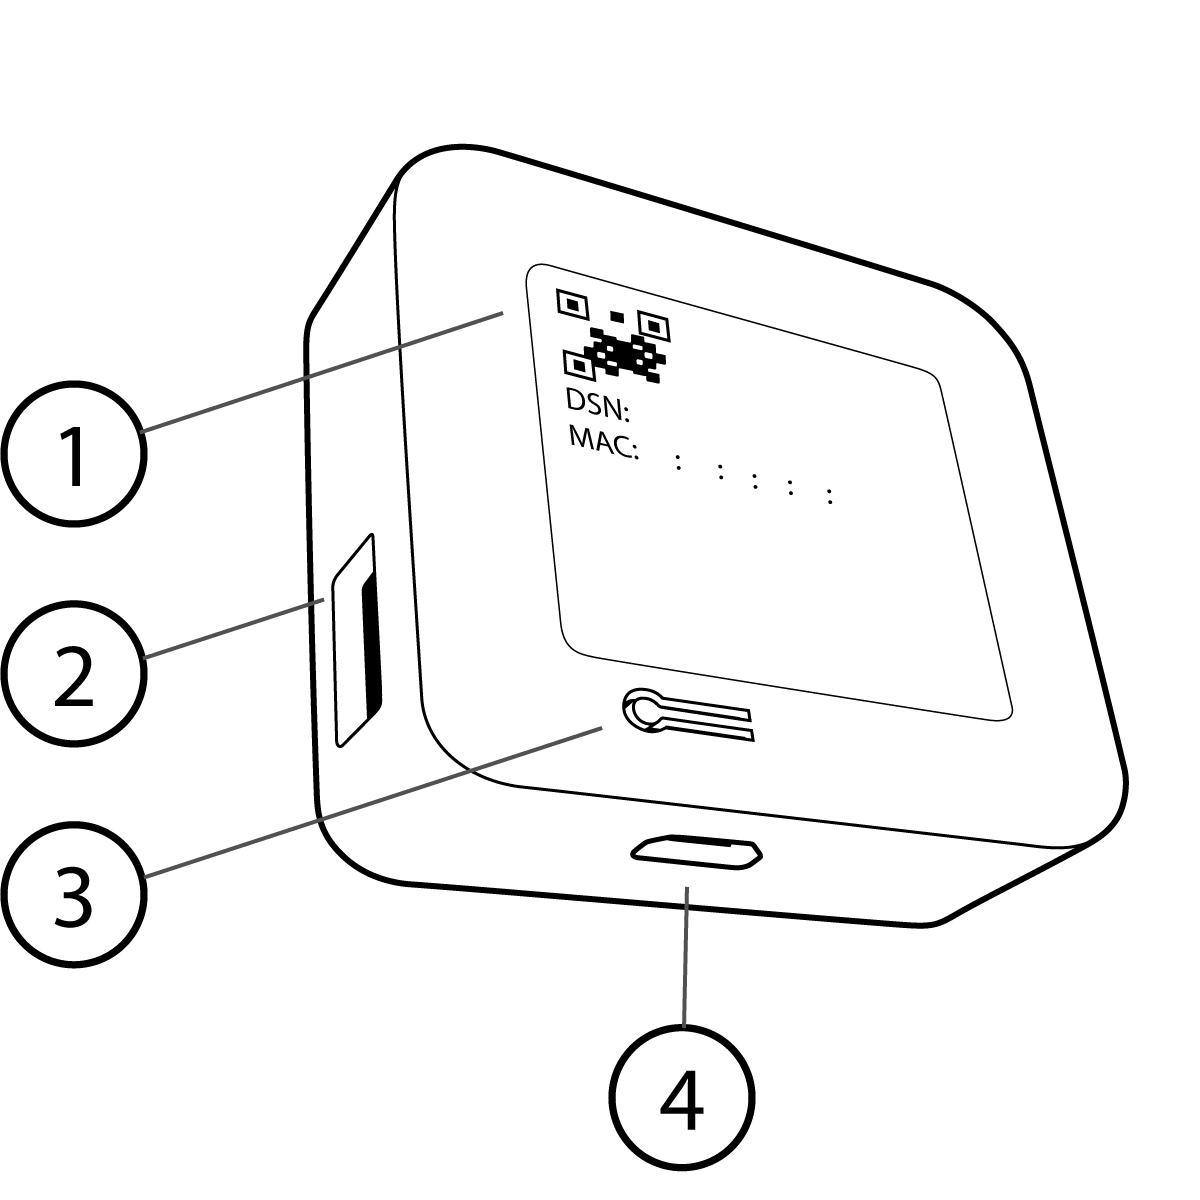 Das Bild zeigt ein Synchronisierungsmodul mit der Rückseite in Ihre Richtung. Ein quadratisches Etikett wird in einer flachen Aussparung platziert, die fast so groß ist wie das Synchronisierungsmodul, und direkt außerhalb des Etiketts ist ein Reset-Knopf aus dem Material geschnitten. An den Seiten befindet sich ein USB-A-Anschluss für den USB-Speicherstick und der Mini-USB-Anschluss für das Netzkabel befindet sich neben der Reset-Taste. An der Vorderseite des Sync-Moduls befinden sich zwei LED-Leuchten, die in Löchern in der oberen rechten Ecke der Vorderseite eingelassen sind.